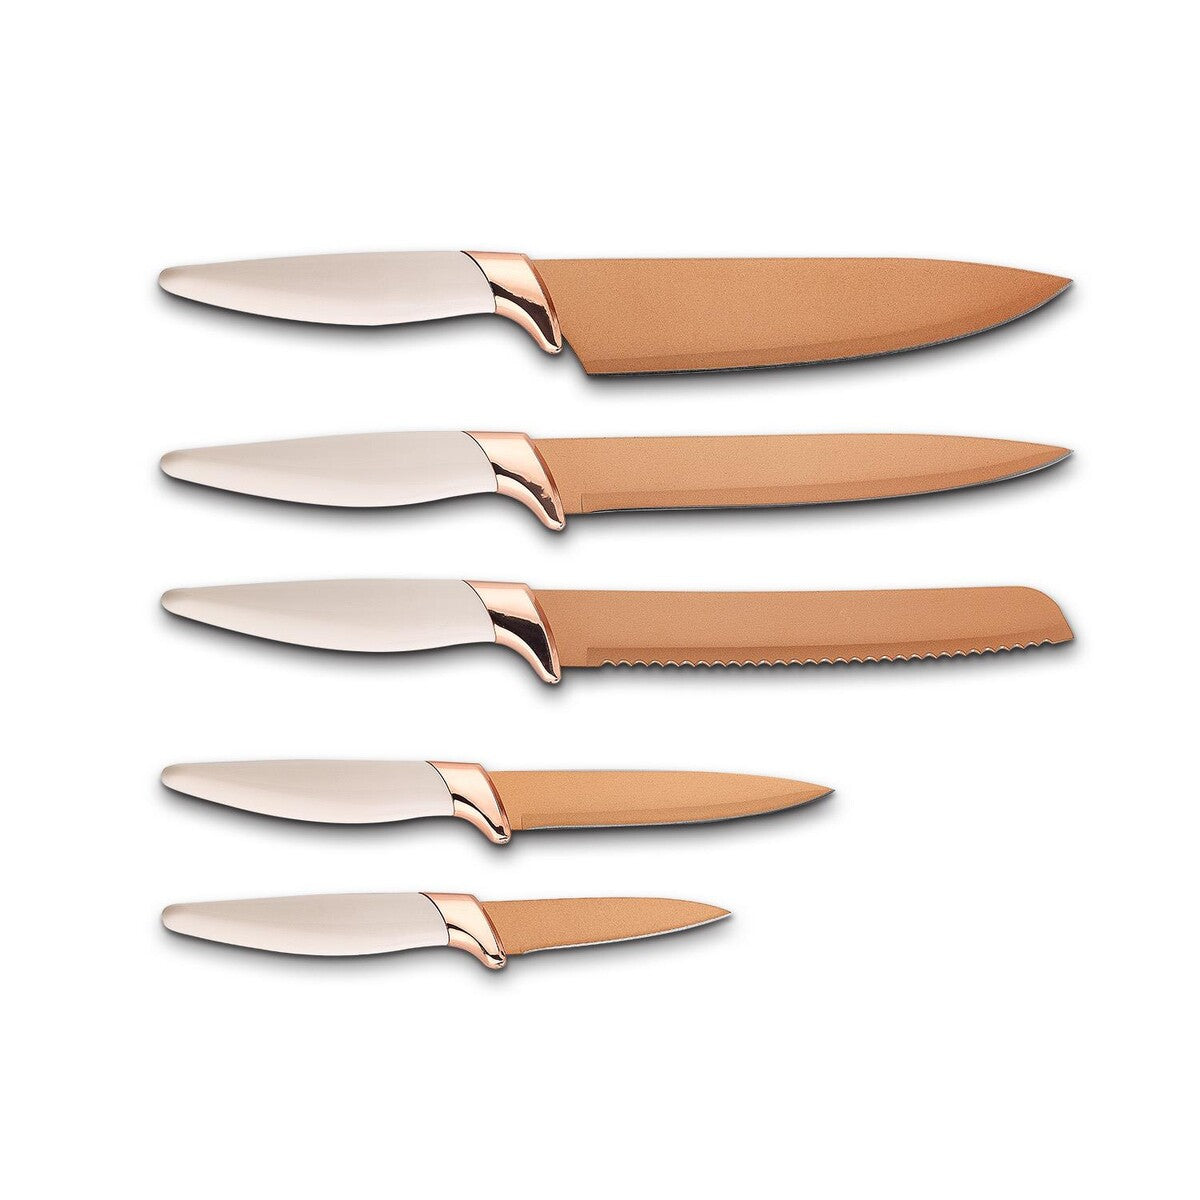 Schafer Kitchenhouse Knife Set 6 Pieces Copper – Turcamart ®